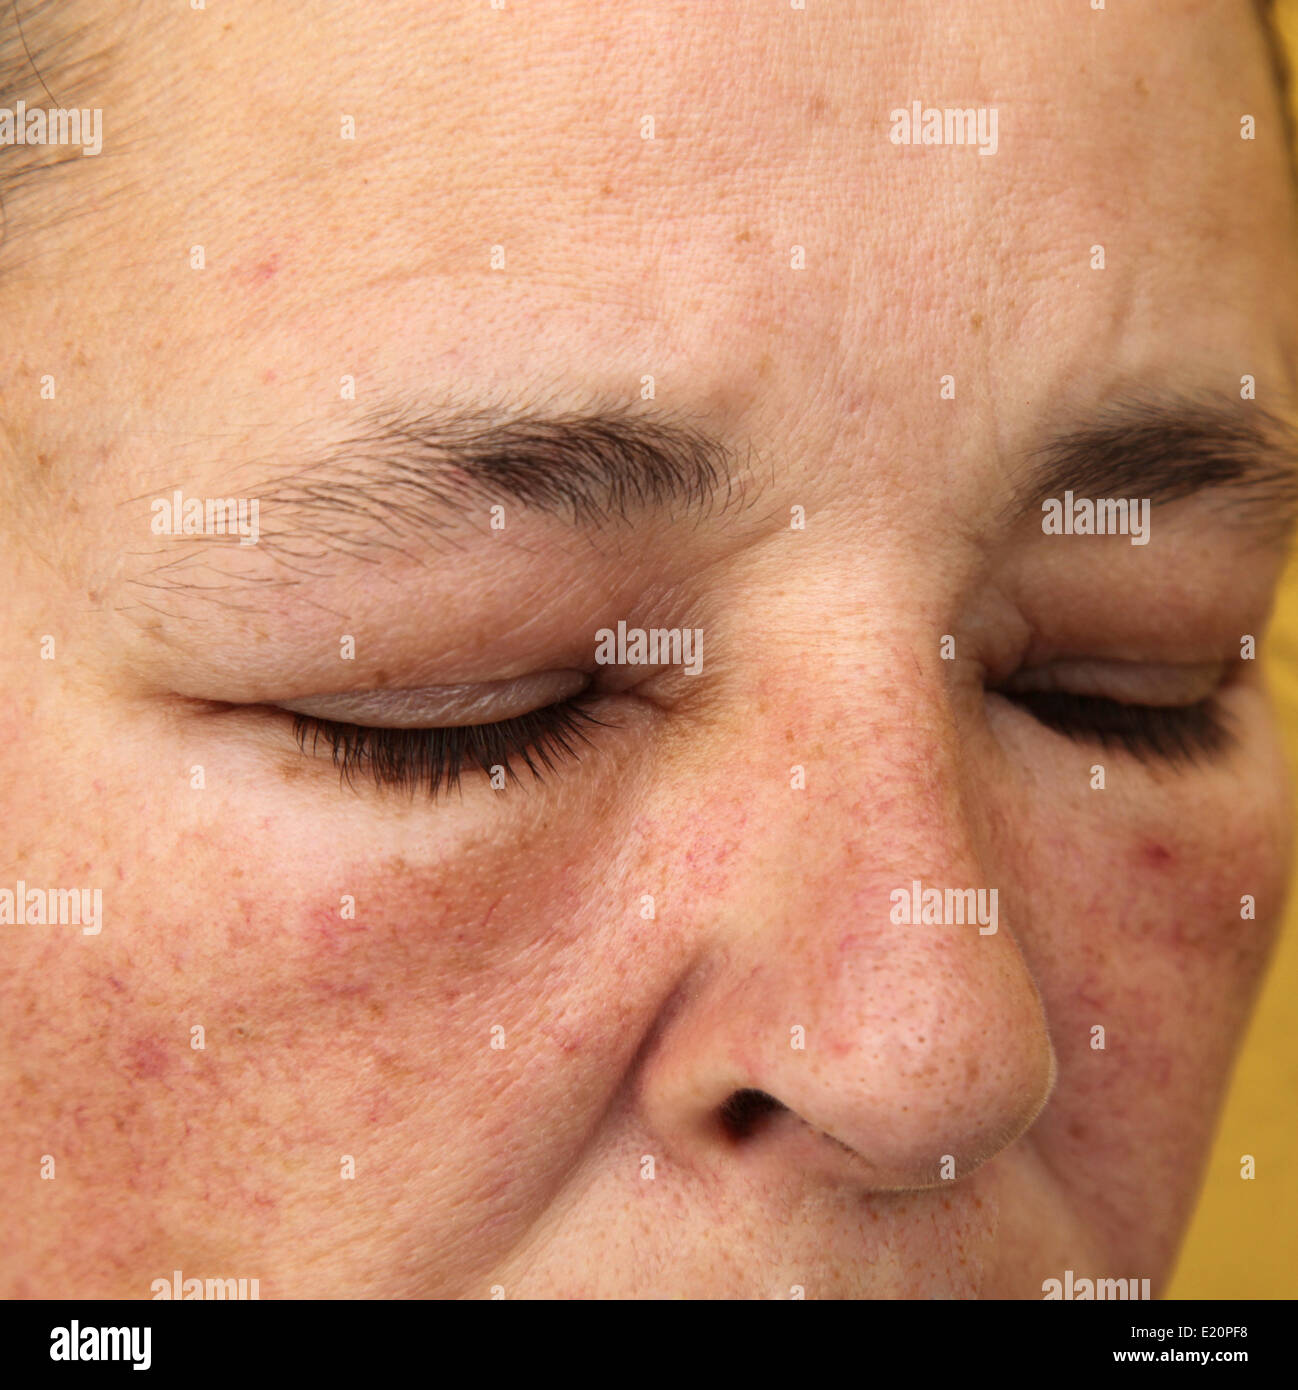 Geschwollene Augen und Gesicht für Allergie Stockfotografie - Alamy